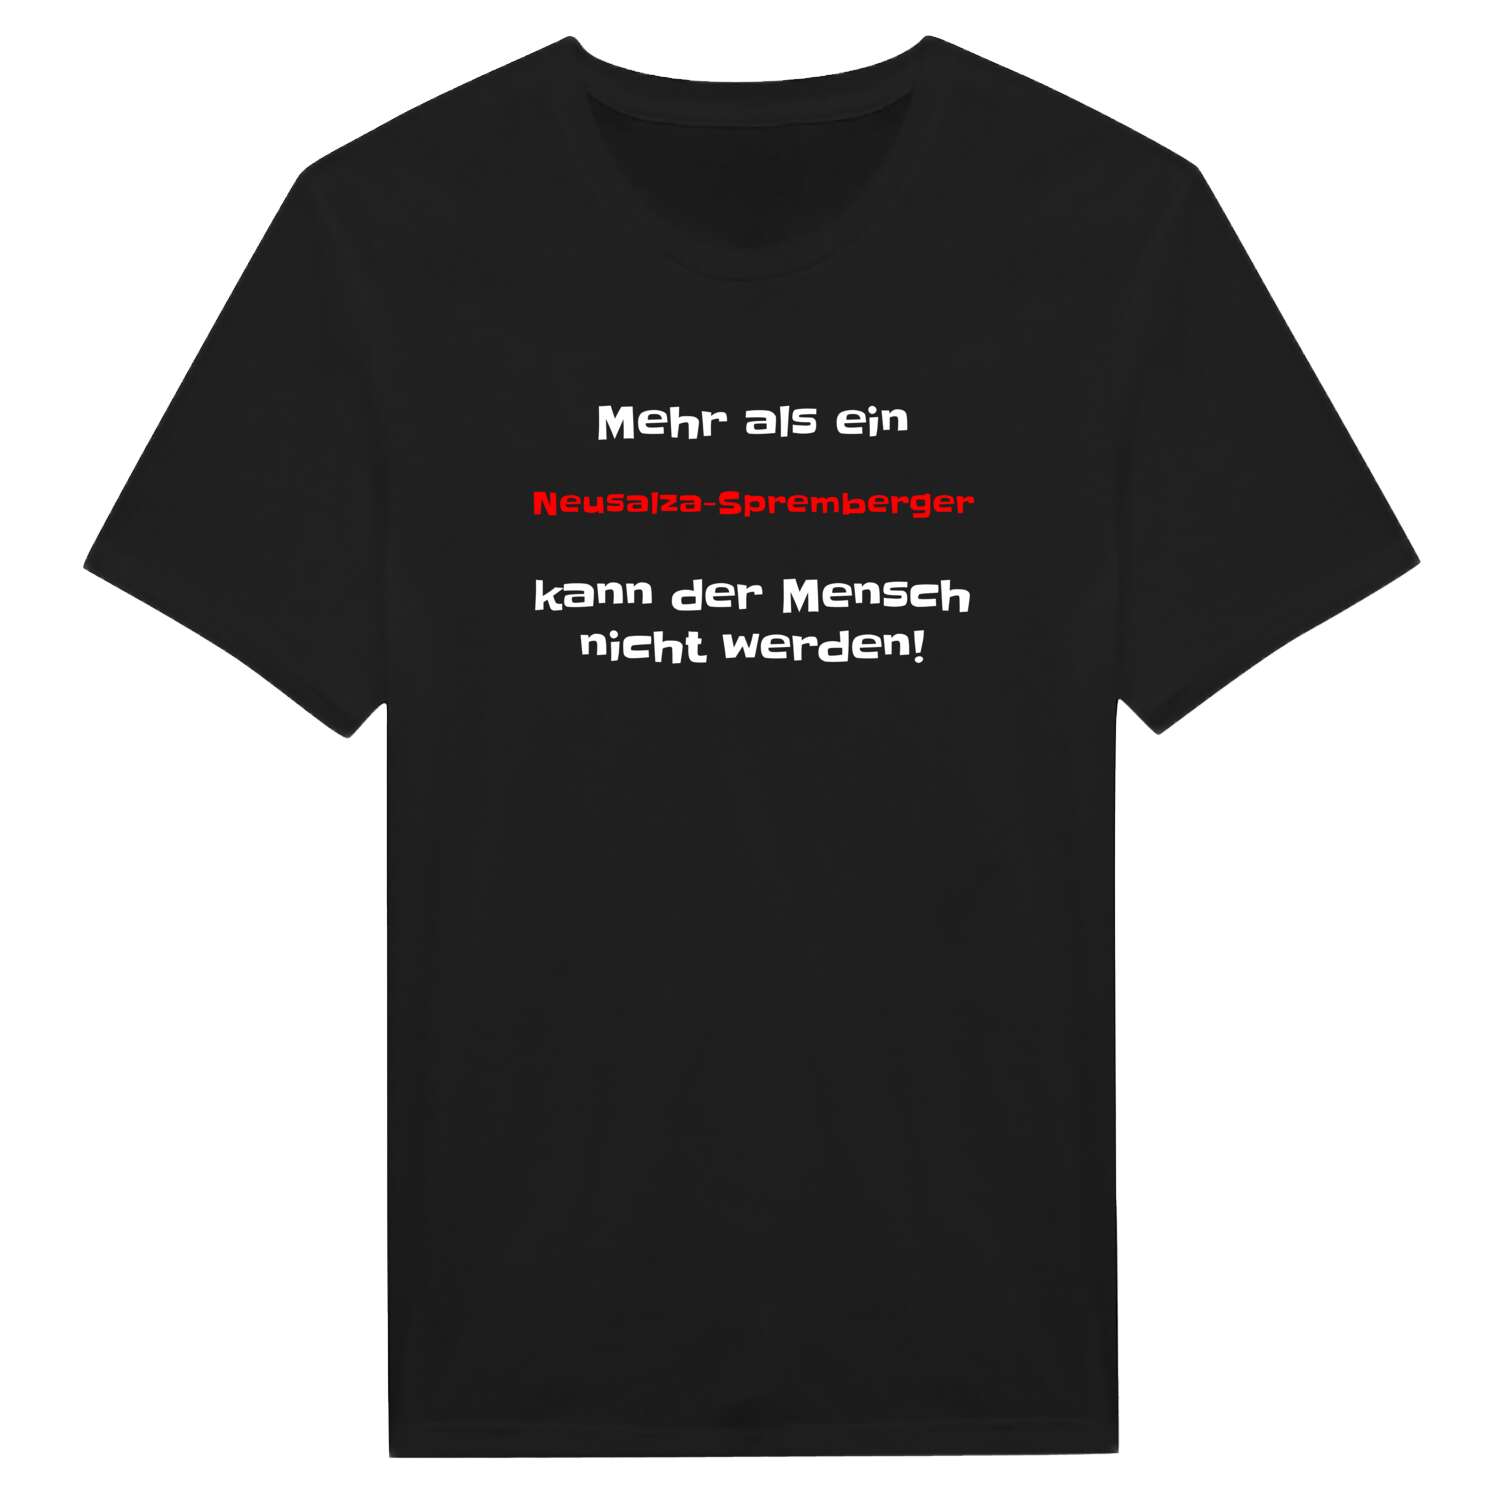 Neusalza-Spremberg T-Shirt »Mehr als ein«